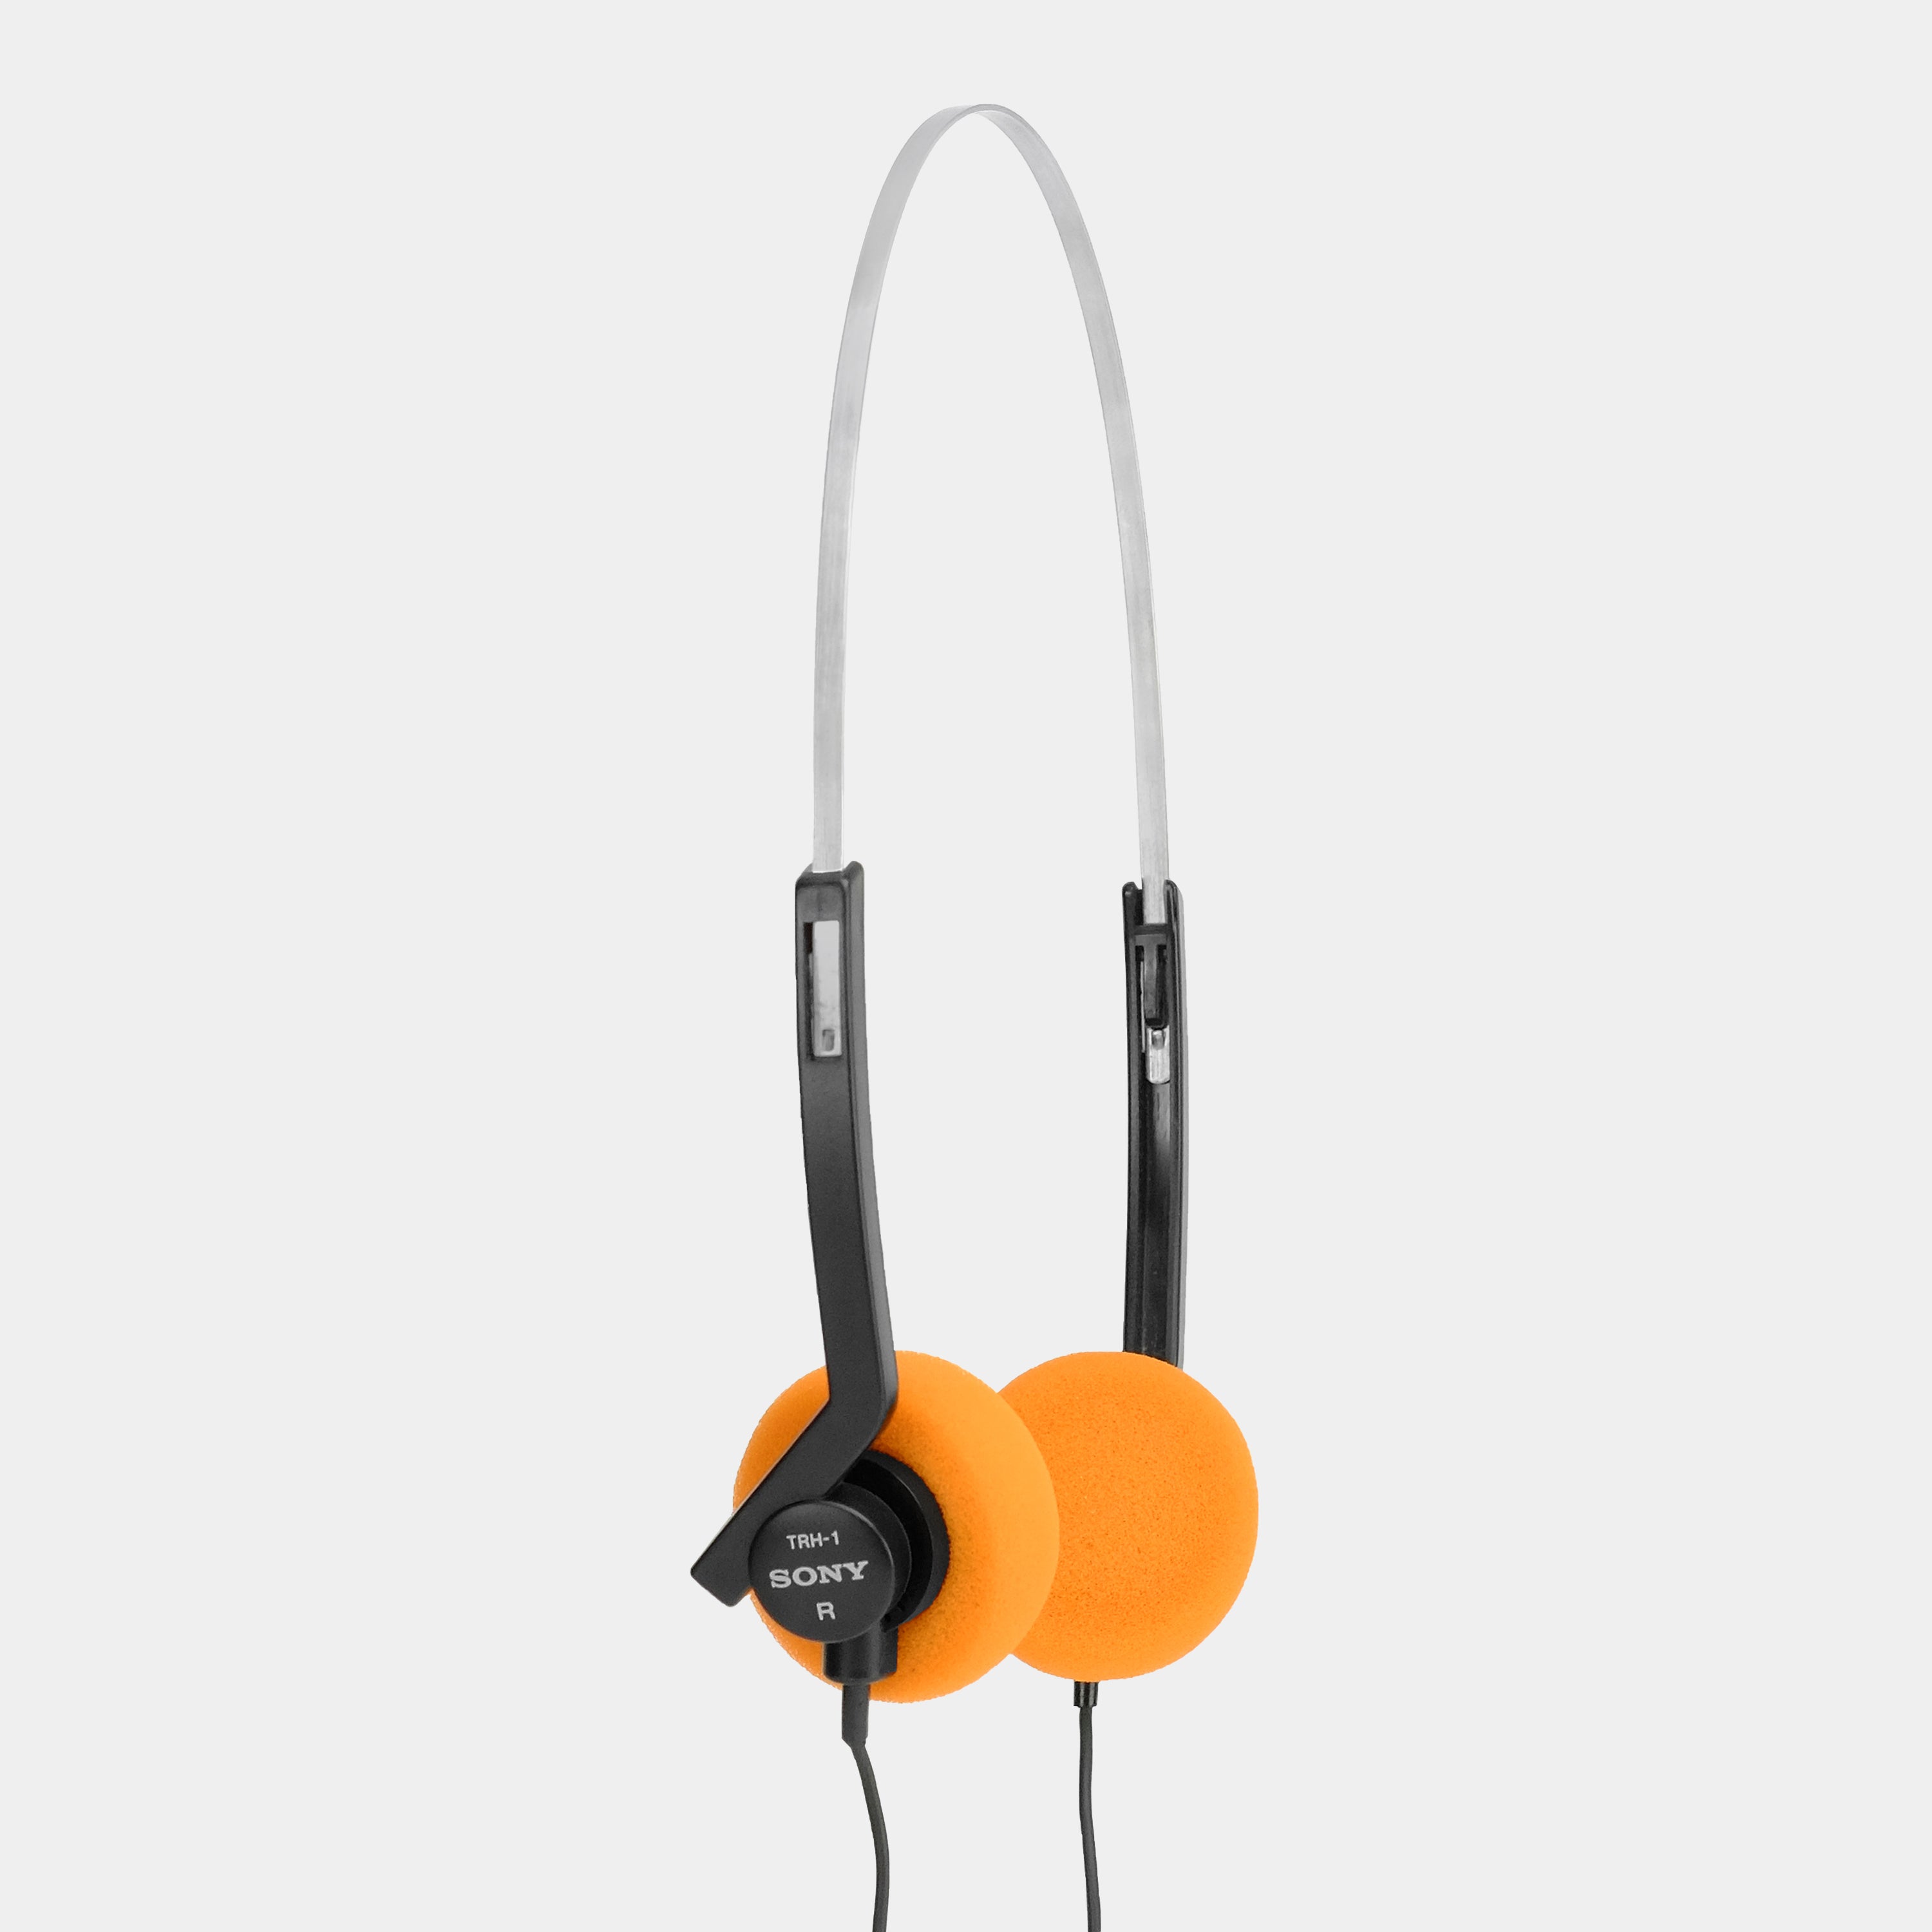 Sony TRH-1 Foam On-Ear Headphones